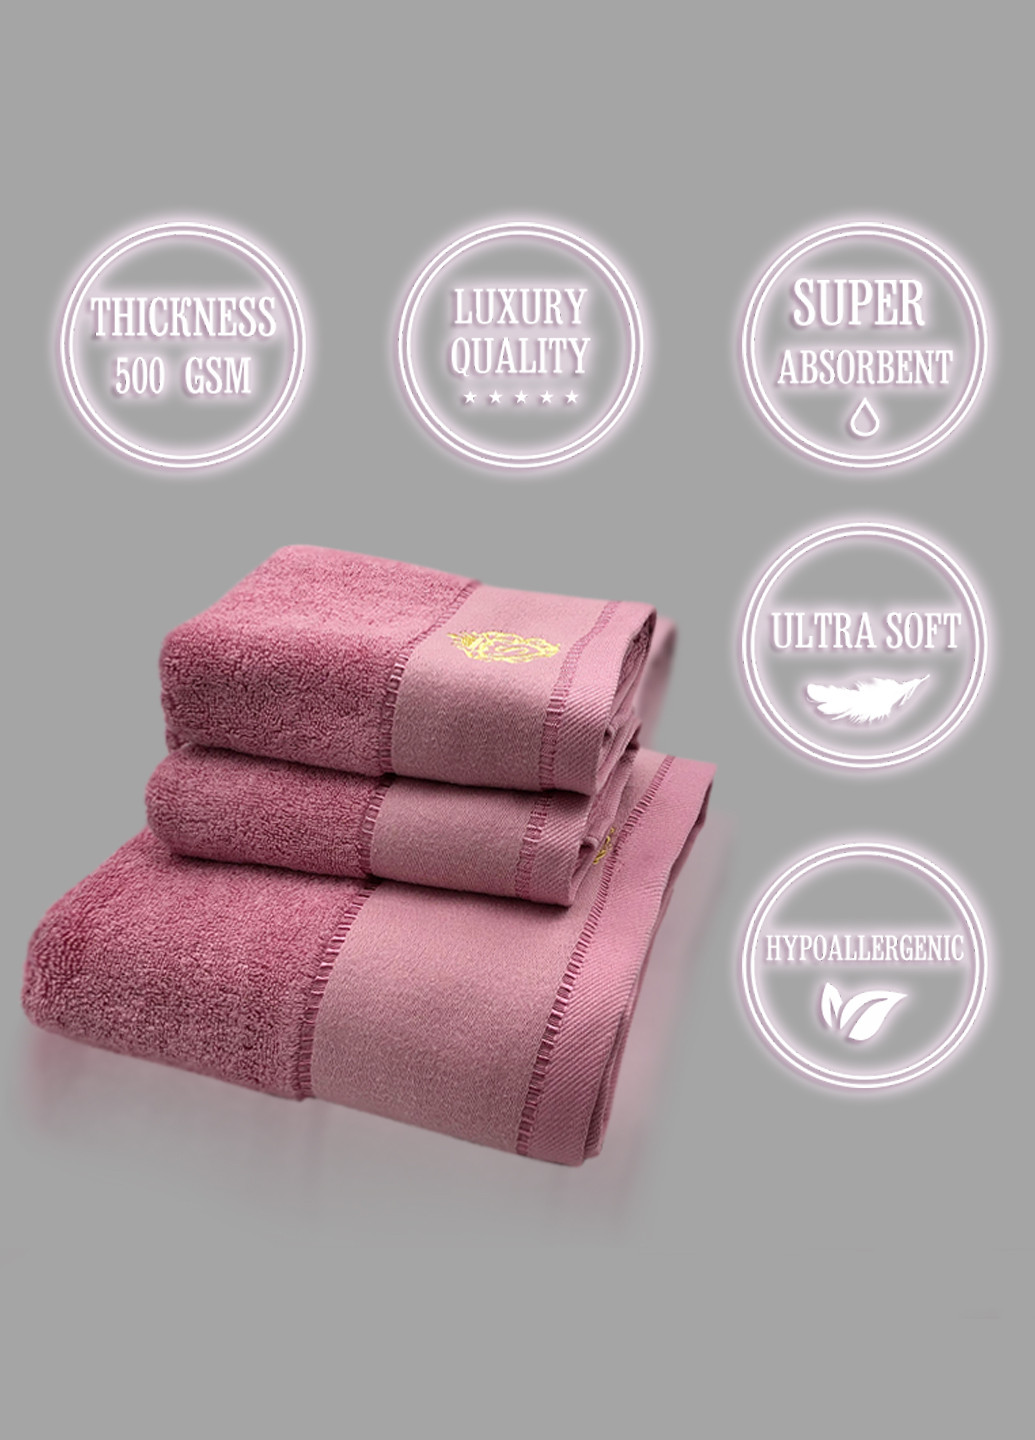 Lovely Svi набор полотенец hotel & spa - комплект банных полотенец : 1 шт-70 на 140 см, 2 шт-34 на 72 см розовый однотонный розовый производство - Китай